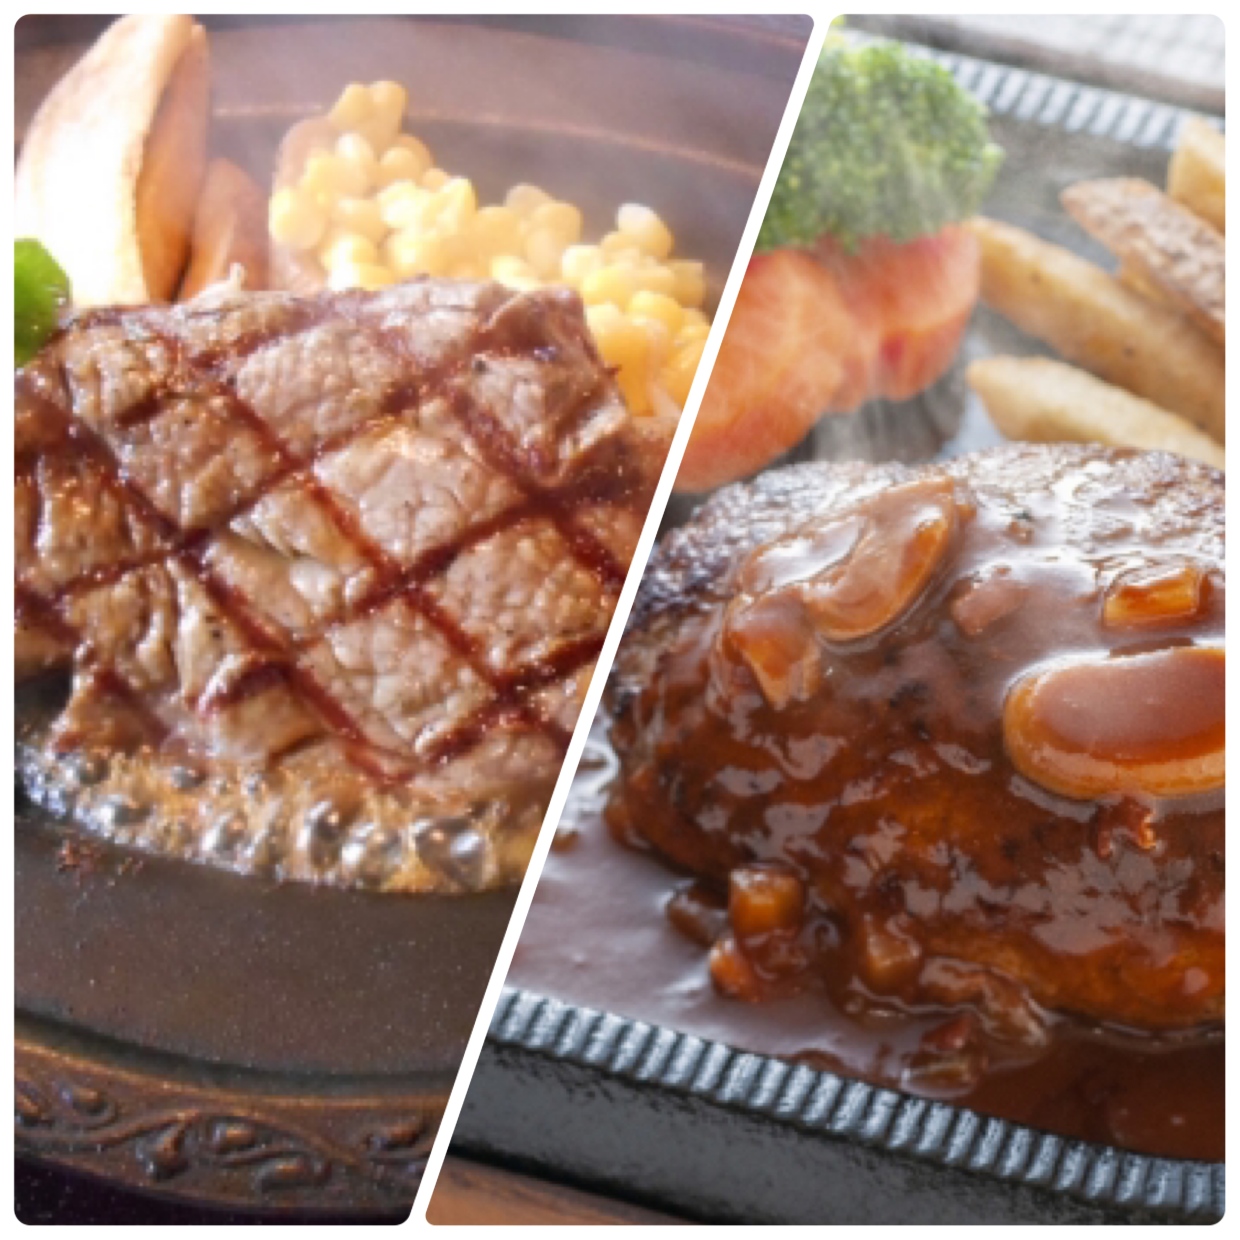  【太らないのはどっち？】「ステーキ」VS「ハンバーグ」ダイエットにむいている肉料理は？ 